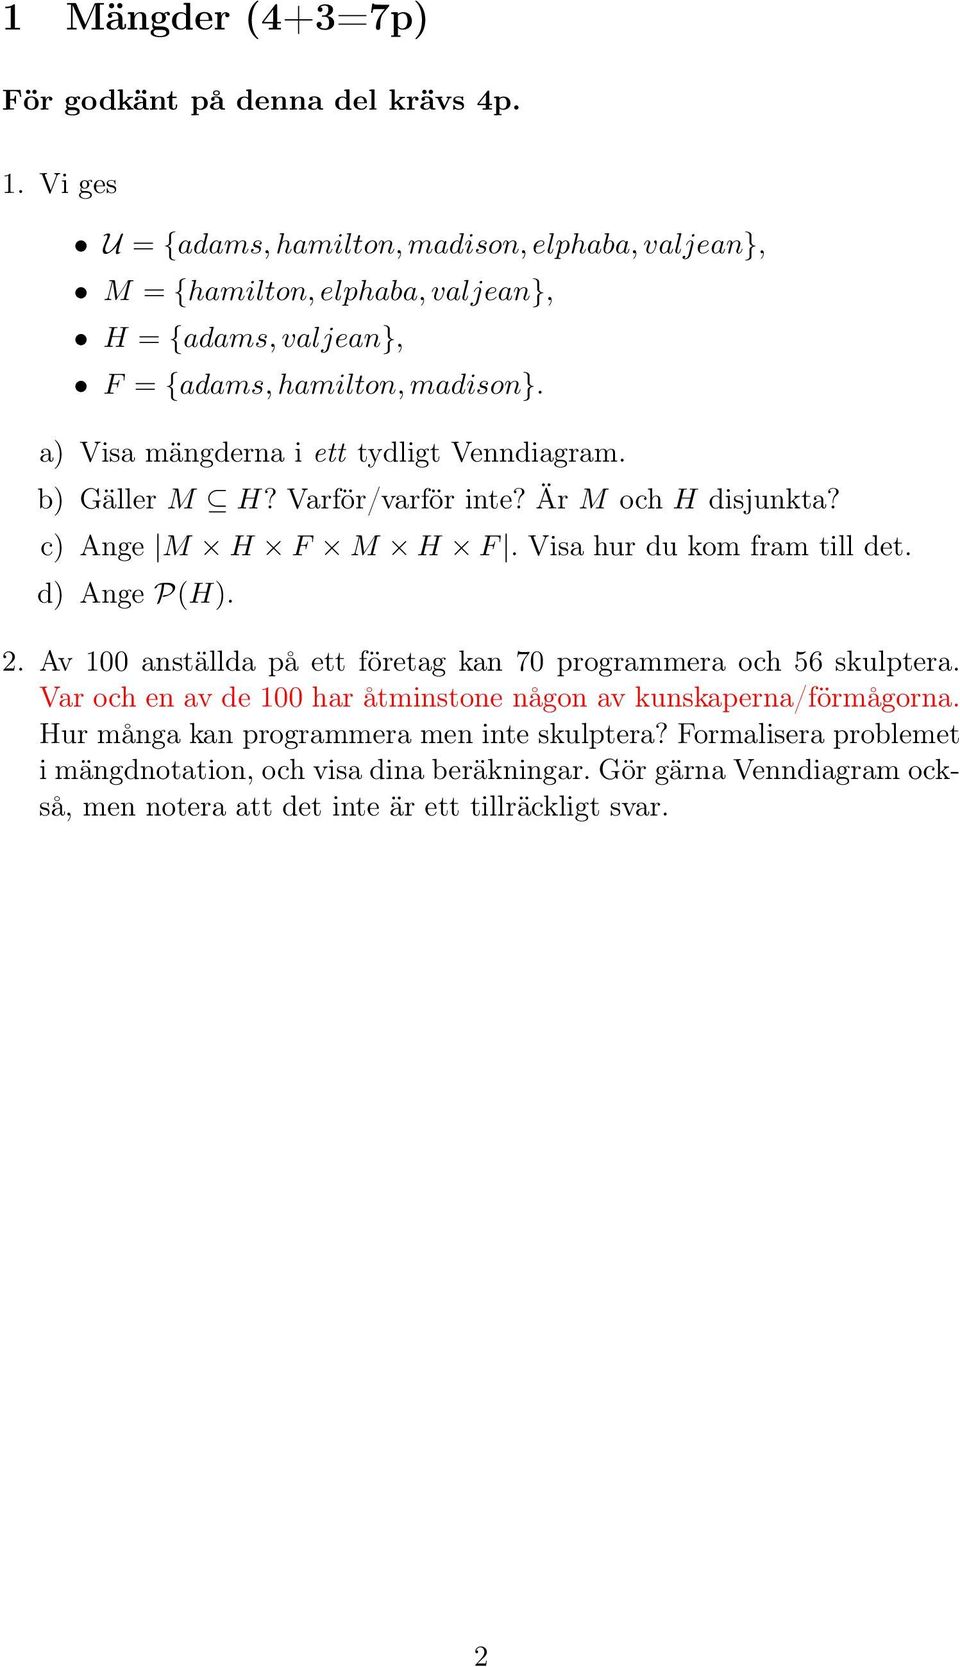 a) Visa mängderna i ett tydligt Venndiagram. b) Gäller M H? Varför/varför inte? Är M och H disjunkta? c) Ange M H F M H F. Visa hur du kom fram till det. d) Ange P(H).